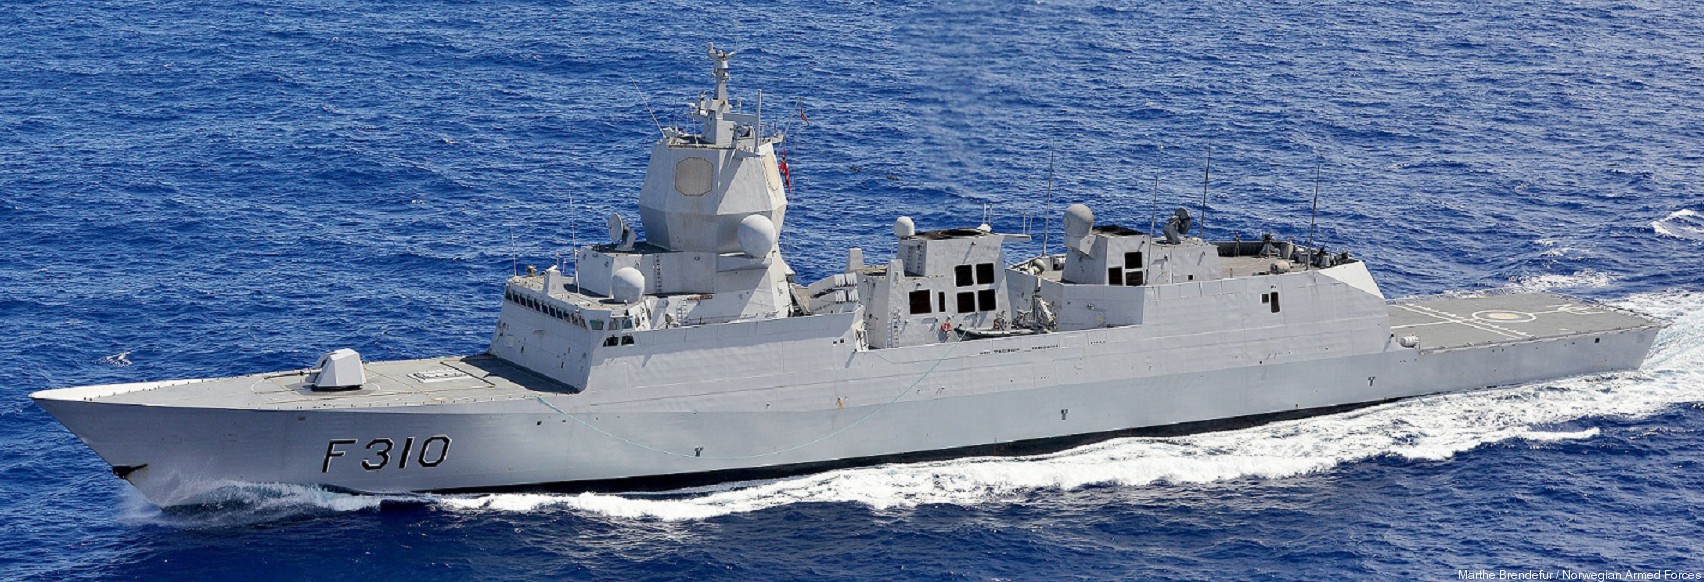 f-310 fridtjof nansen hnoms knm frigate royal norwegian navy sjoforsvaret 30